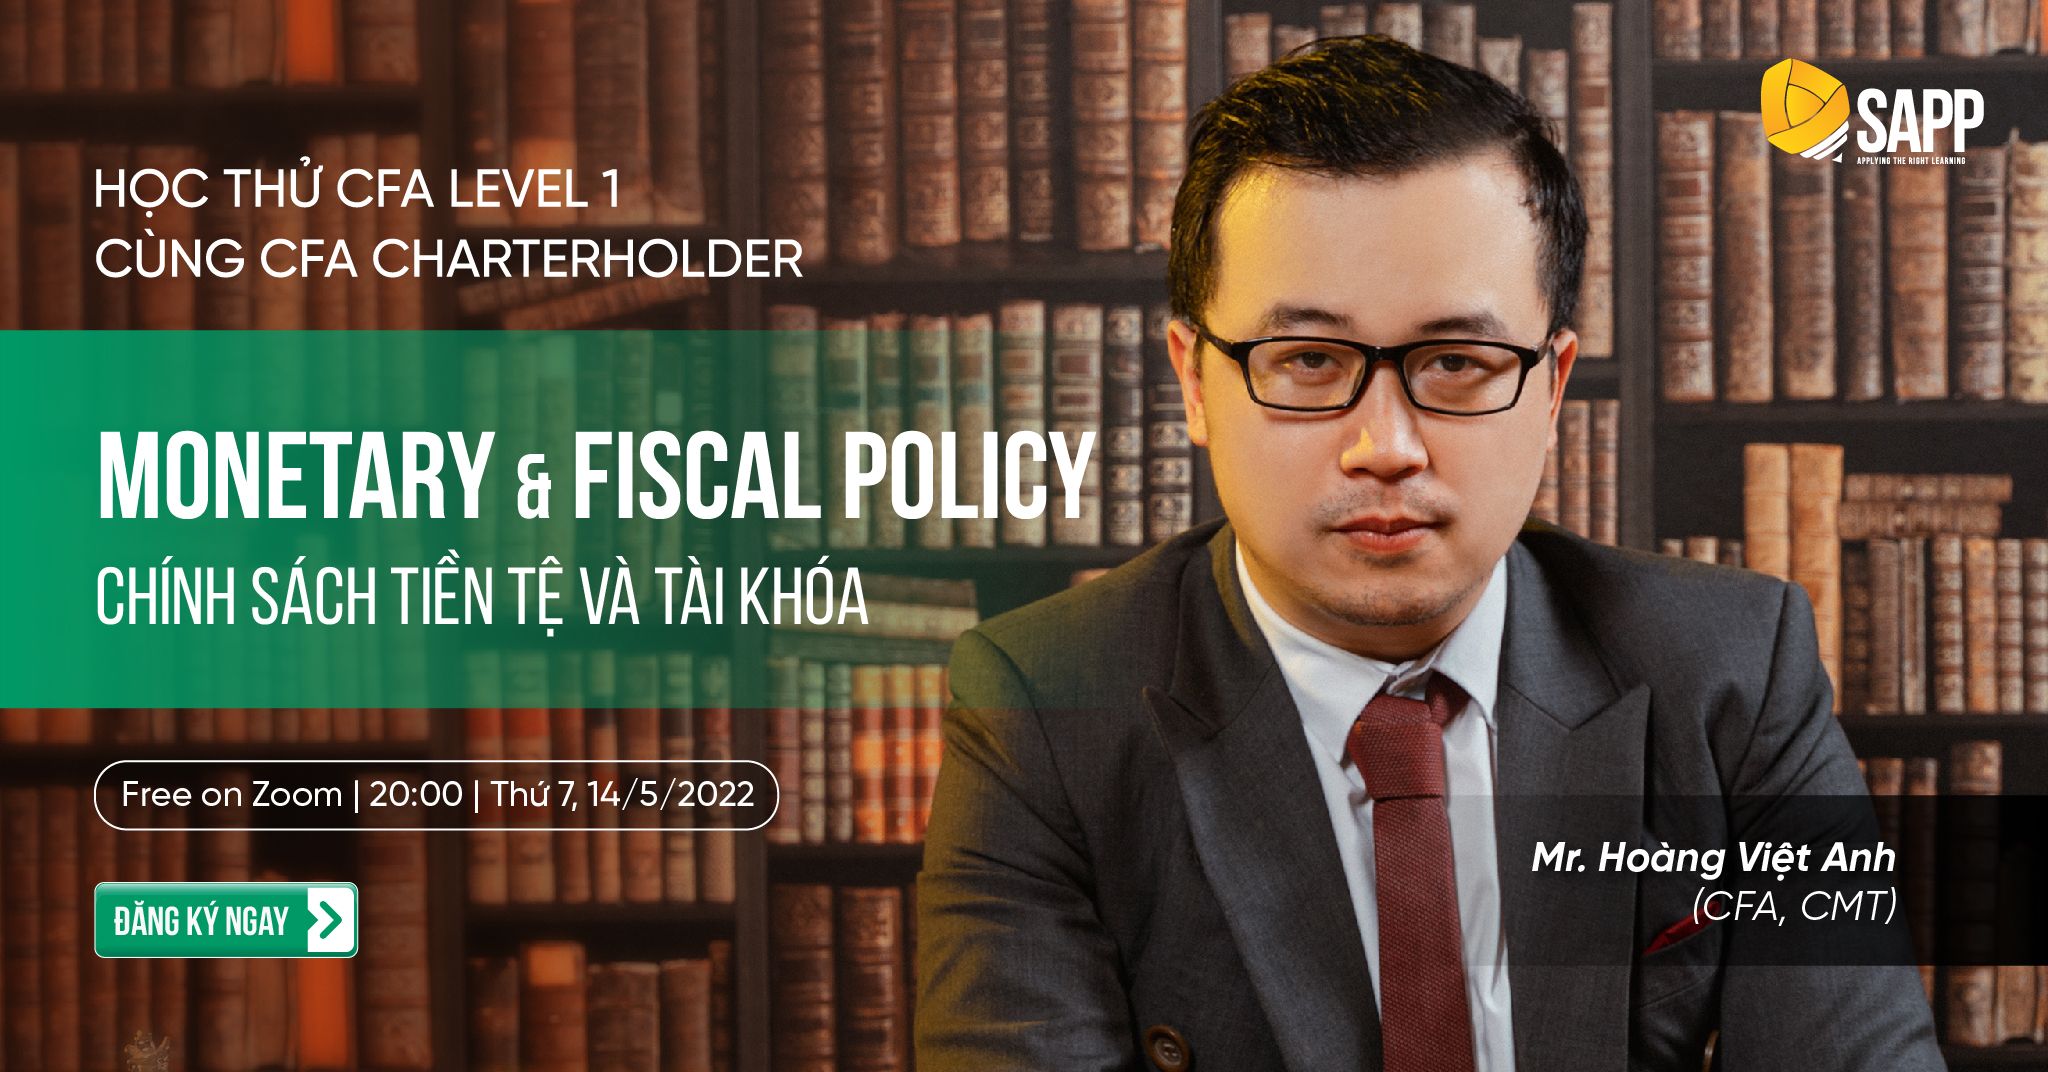 Học Thử CFA Level 1: Monetary & Fiscal Policy - Chính sách Tiền tệ & Tài khóa